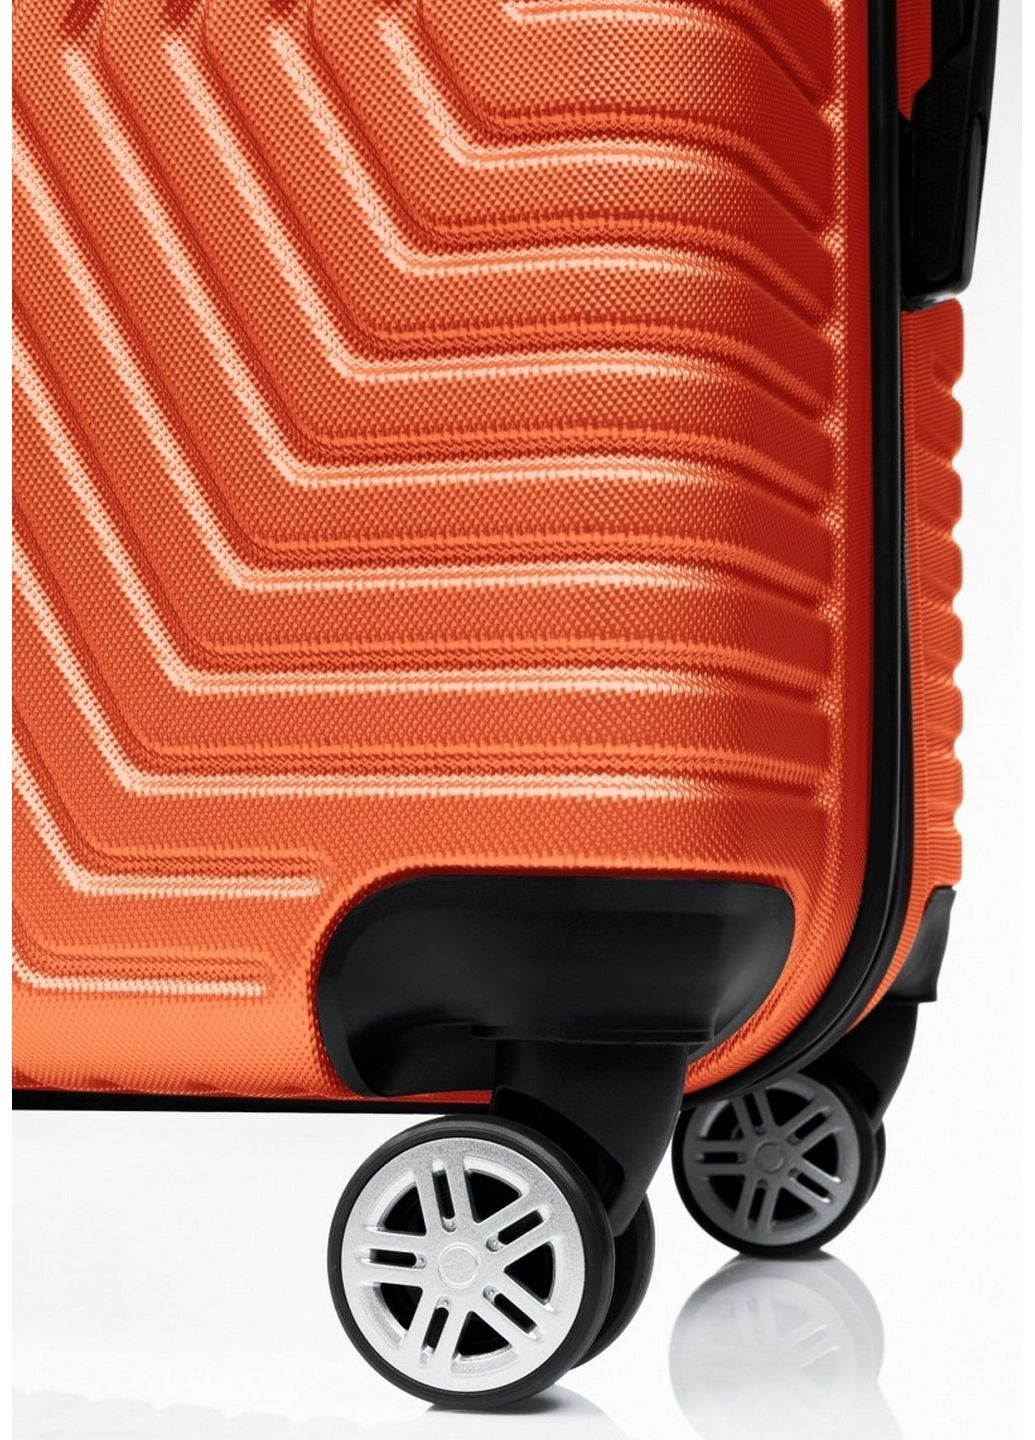 Пластиковый чемодан на колесах средний размер 70L 66х42х28 см GD Polo (289369775)